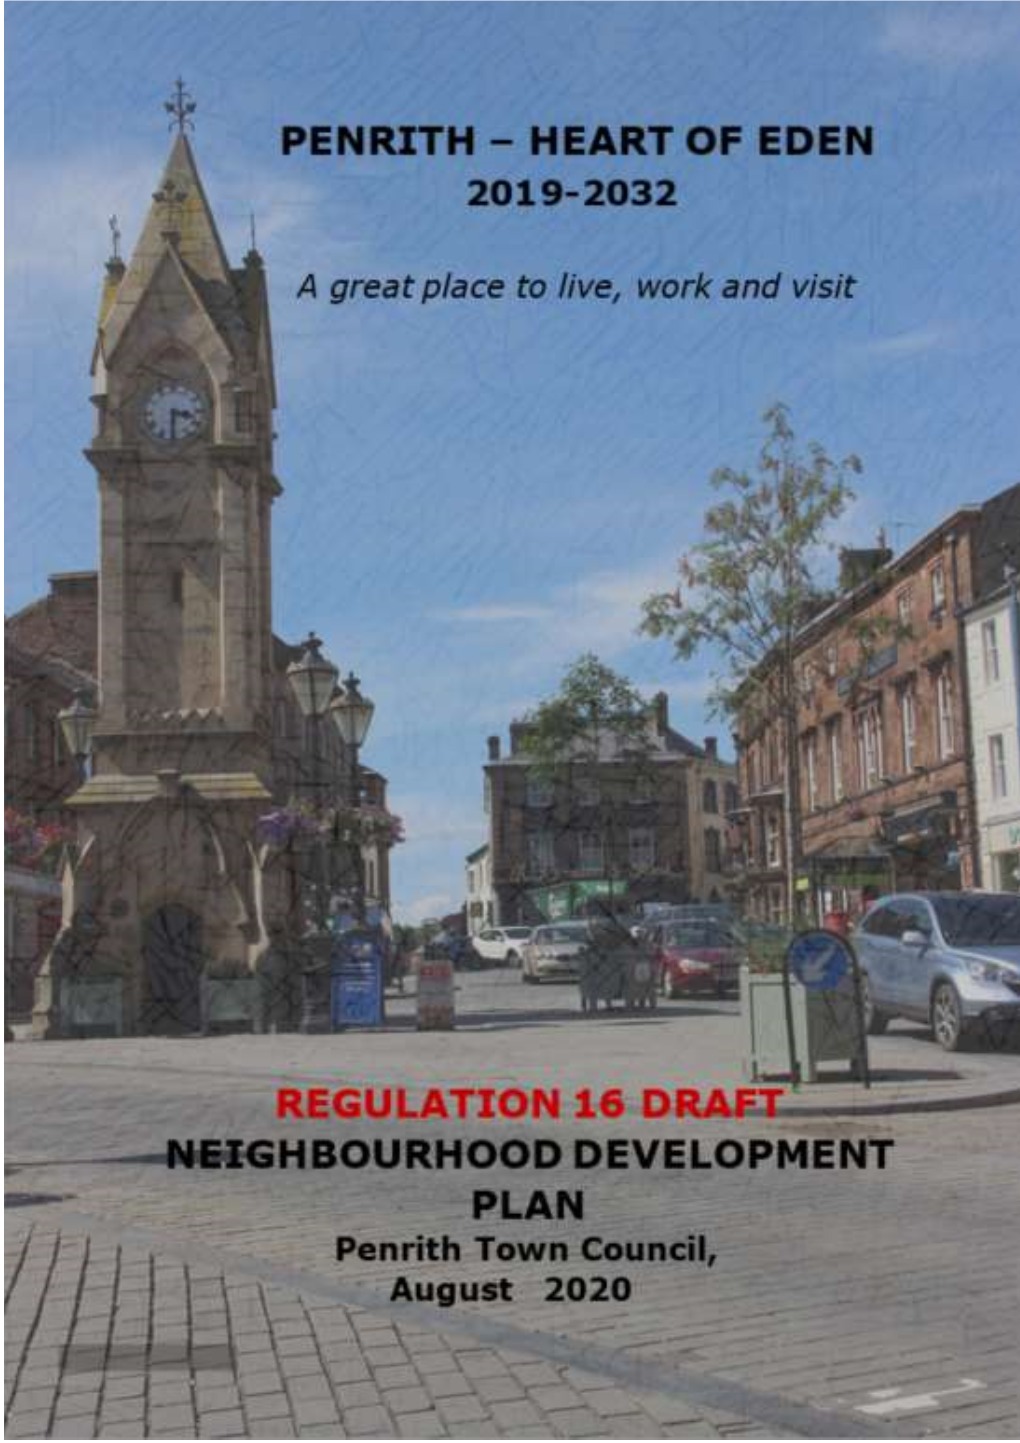 Neighbourhood Development Plan: Penrith Town Council, August 2020